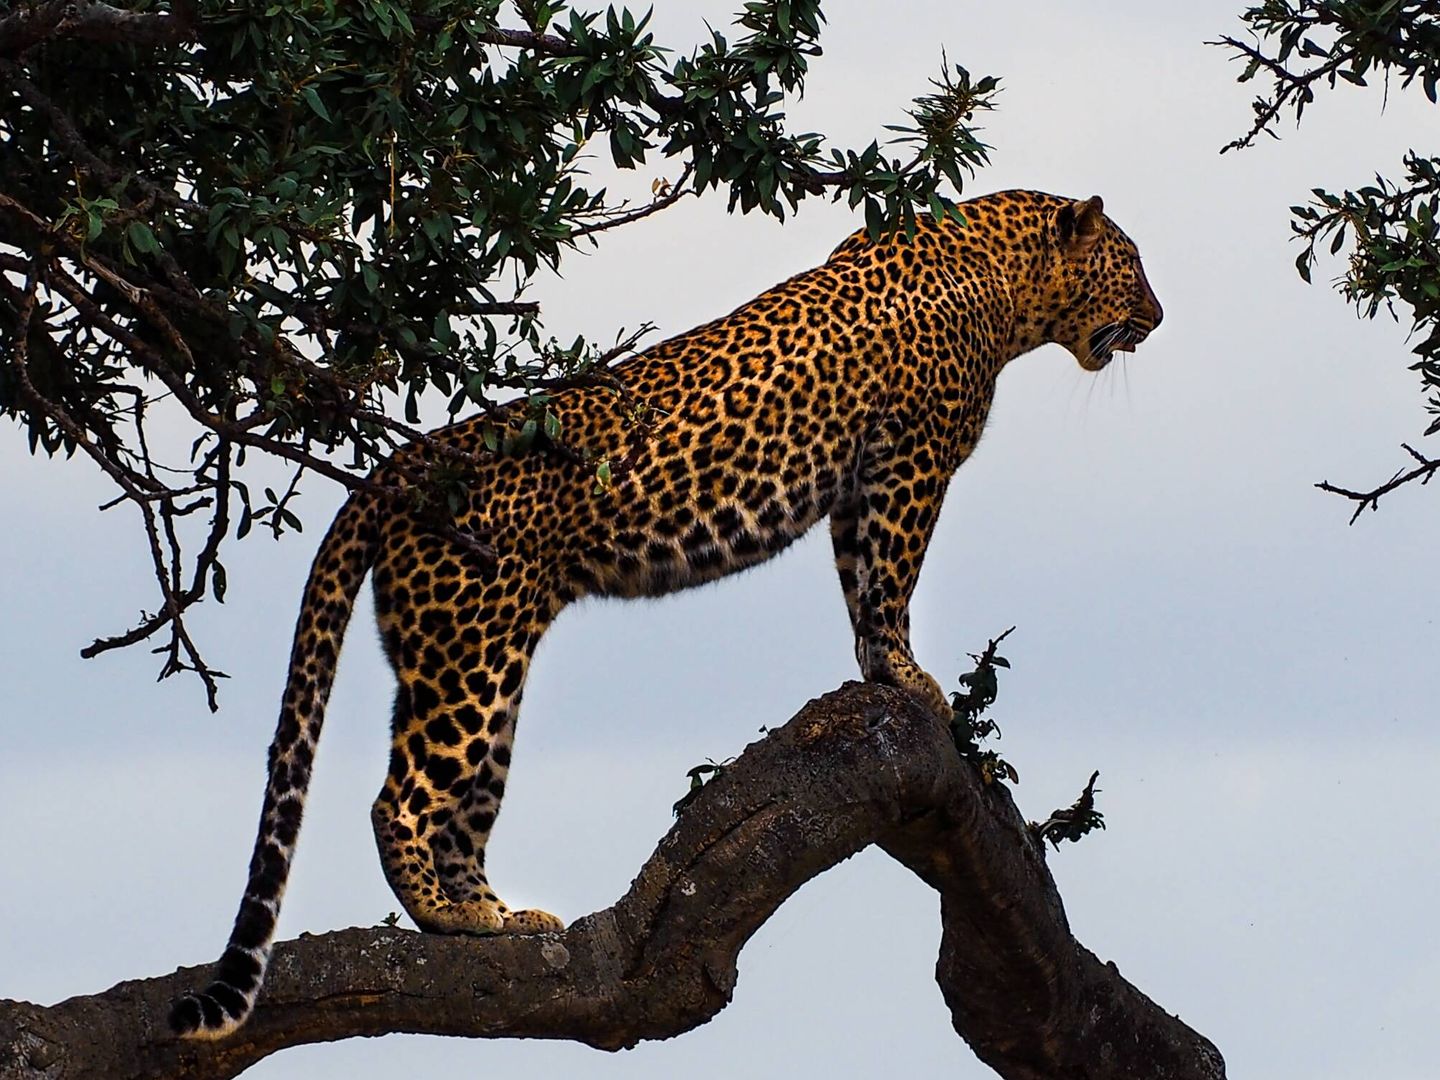 El éxito de la conservación del jaguar abre nuevas oportunidades para el ecoturismo (Unsplash)